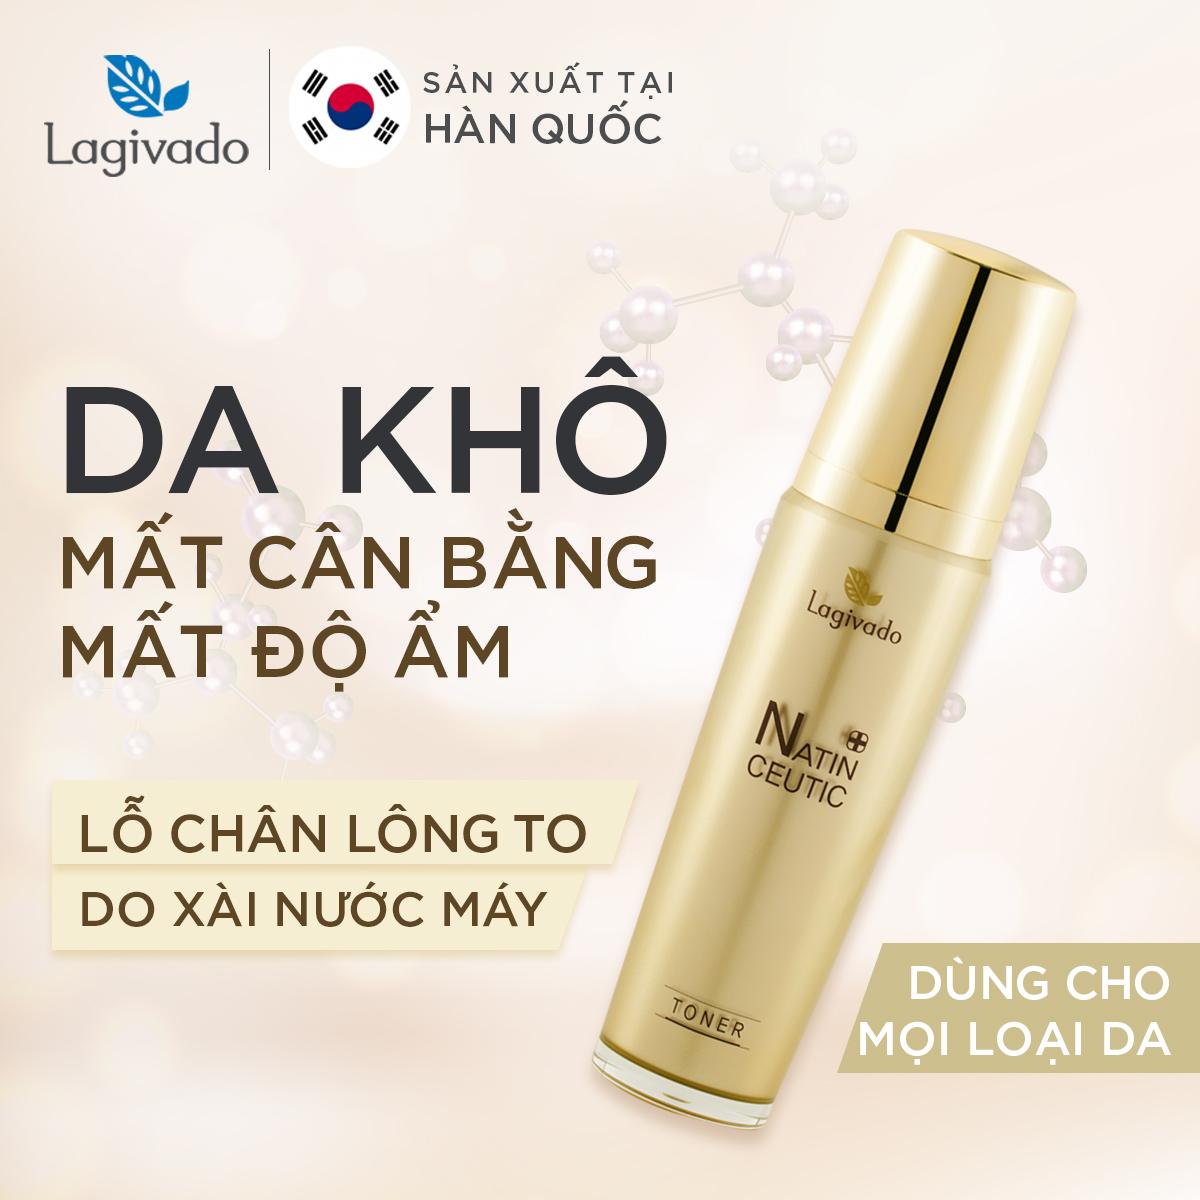 Bộ đôi trẻ hóa da, giảm nám tàn nhang Hàn Quốc Lagivado Natin Ceutic (Toner Ceutic 120 ml + cream Ceutic 50g)